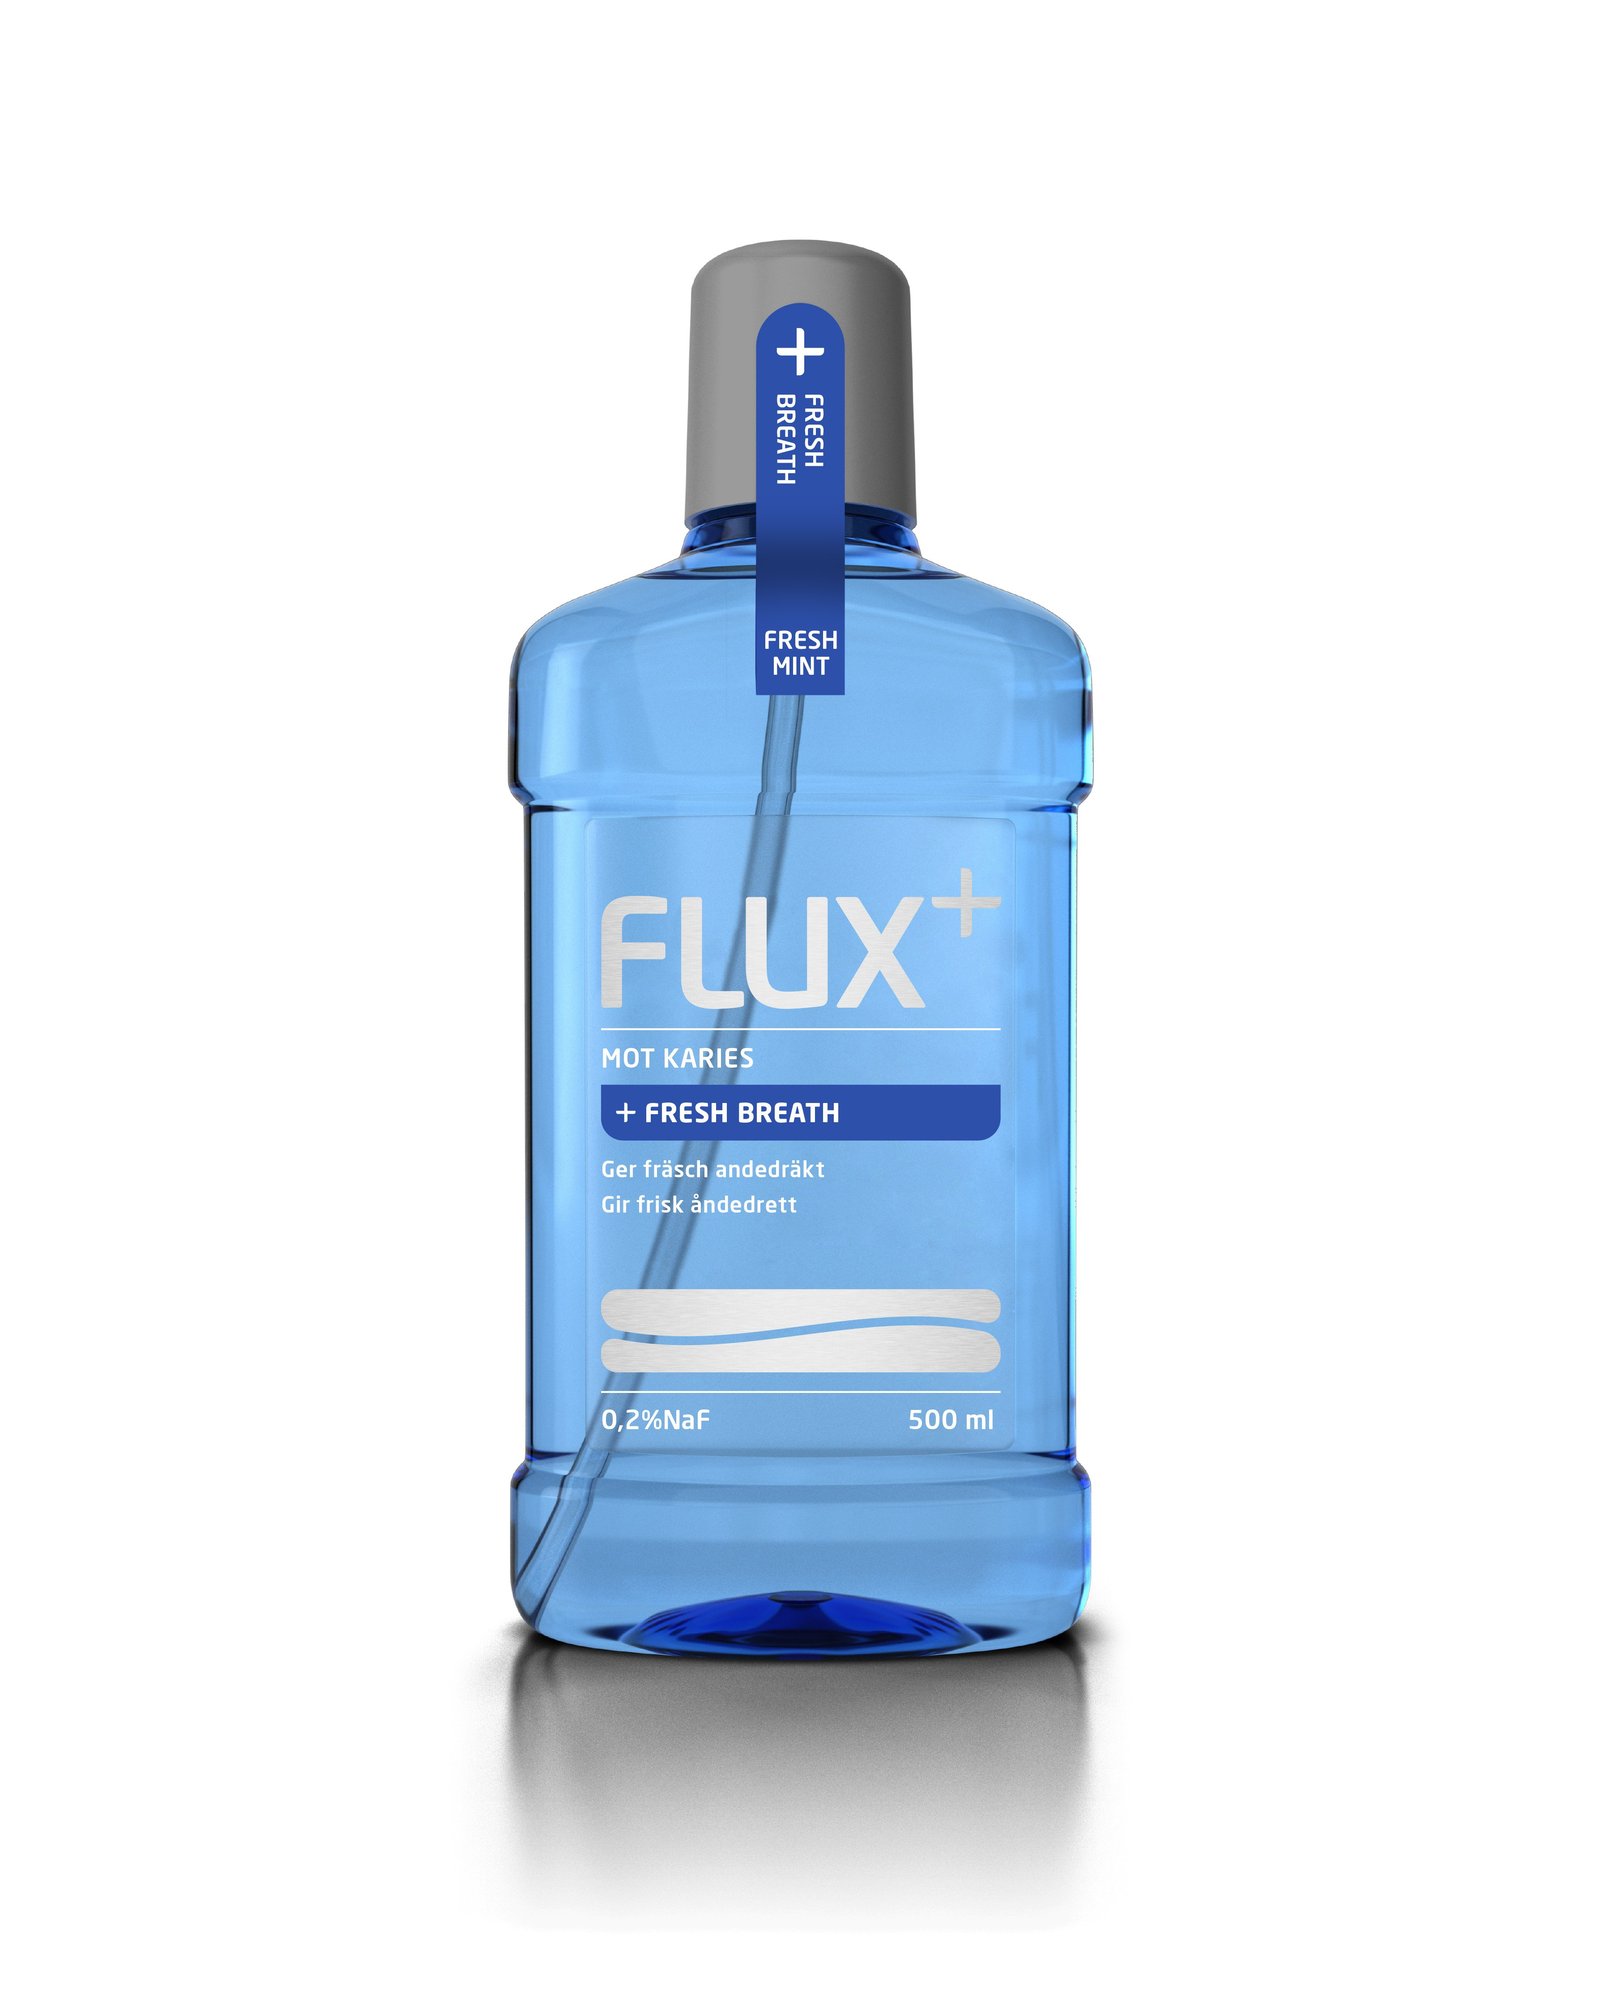 FLUX + Fresh Breath 500 ml